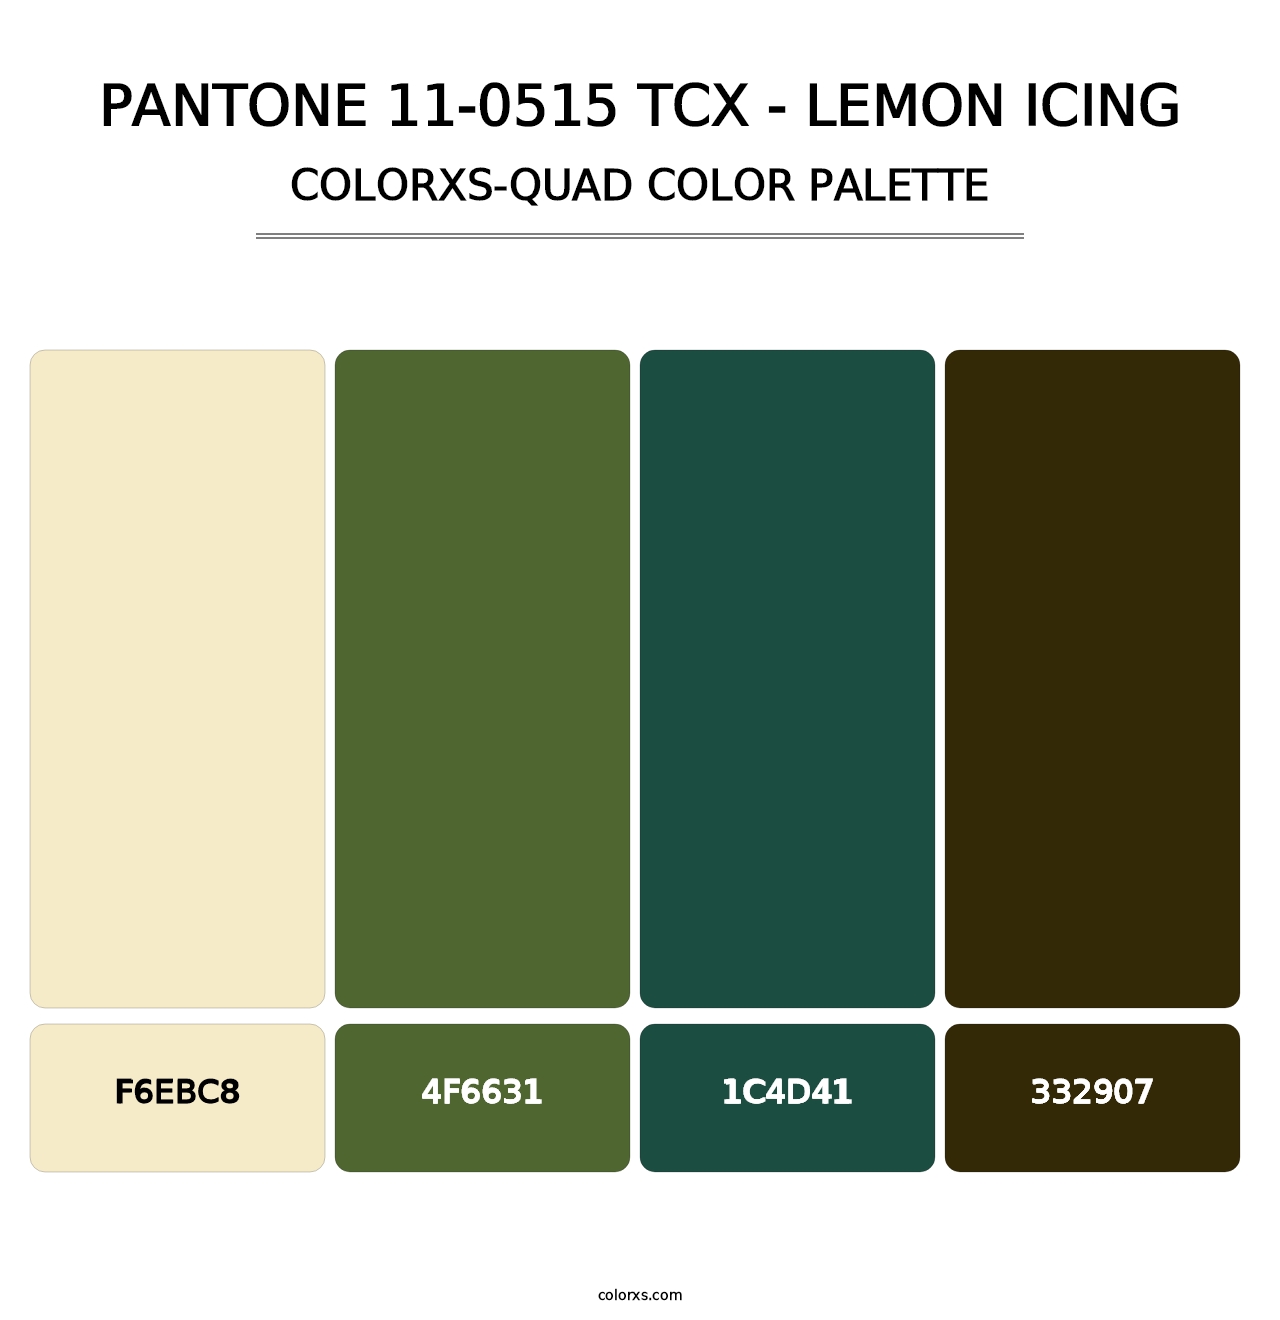 PANTONE 11-0515 TCX - Lemon Icing - Colorxs Quad Palette